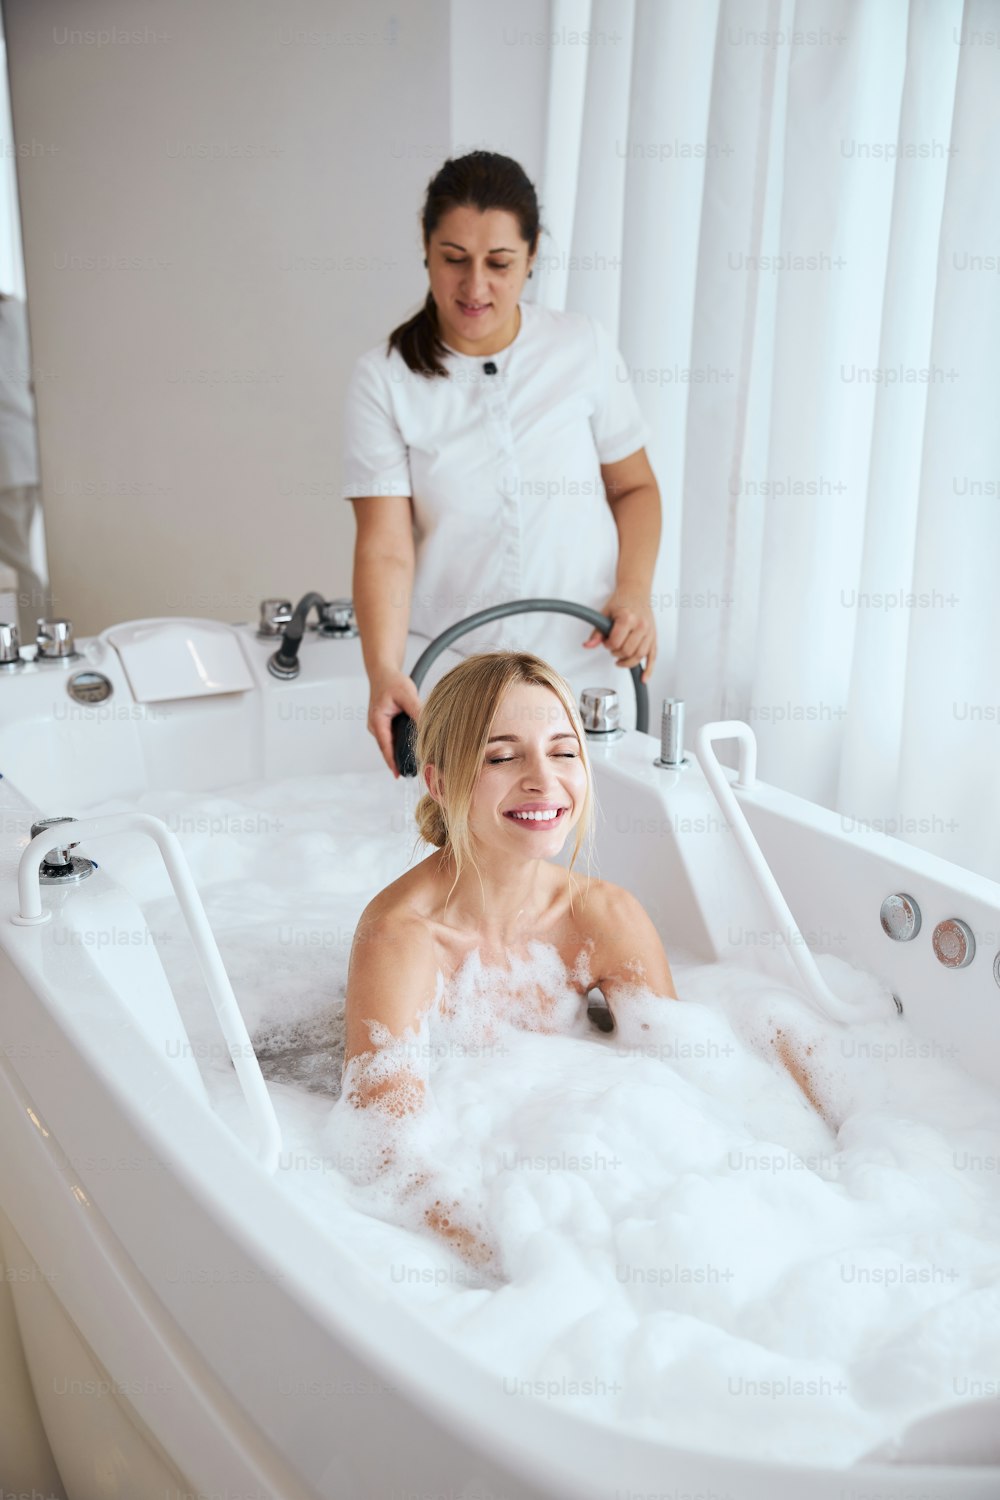 Retrato de cintura para arriba de la mujer que disfruta en la bañera de hidromasaje y del trabajador profesional del salón de spa que usa una manguera durante el masaje subacuático